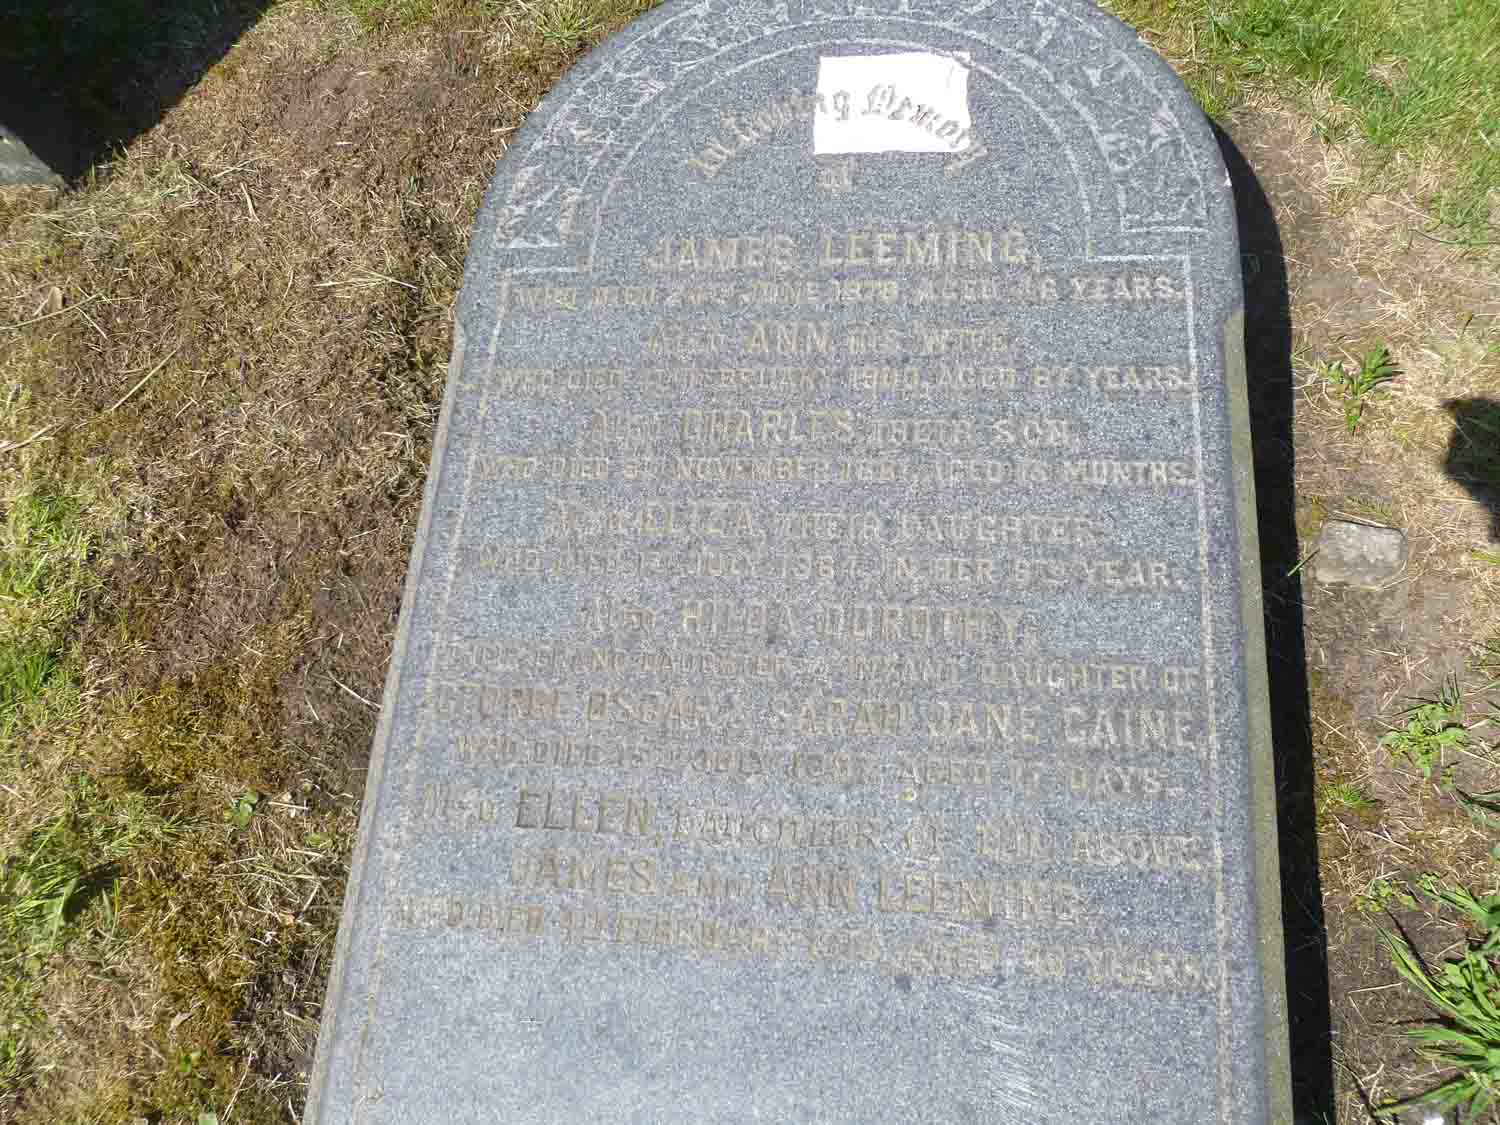 Leeming & Caine (H Left 125) (3)